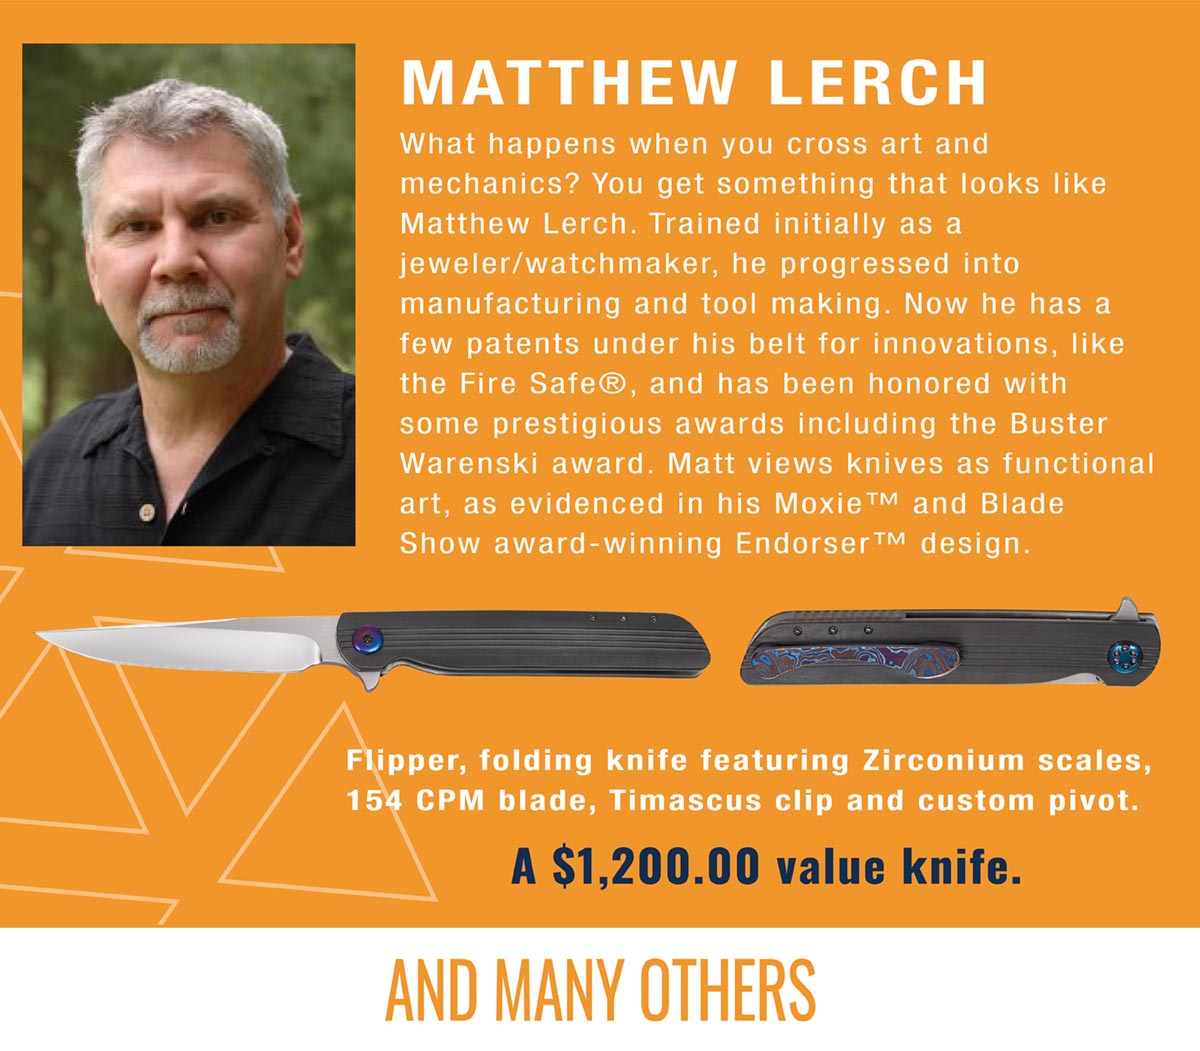 Matthew Lerch